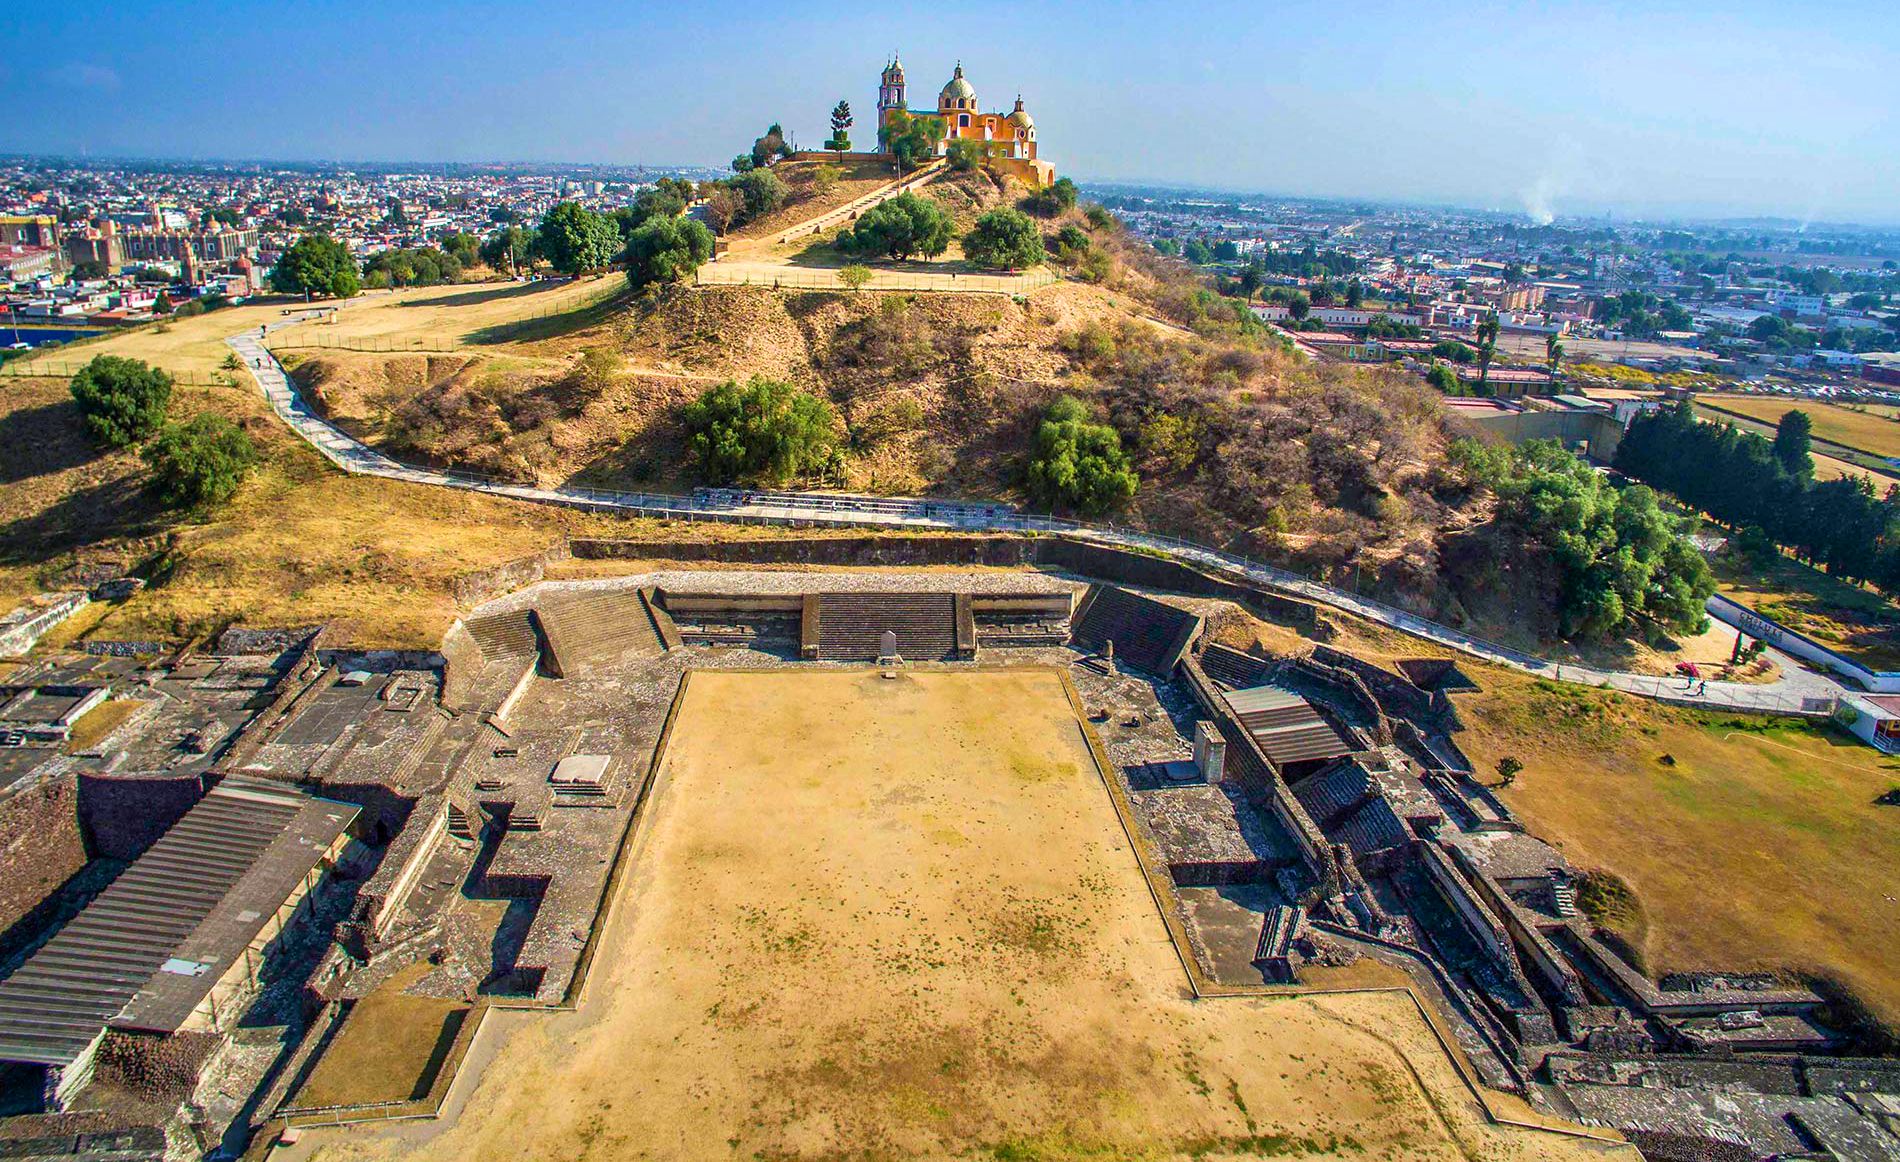 La Zona arqueológica de Cholula, Puebla es el lugar turístico obligatorio a visitar si estas en la región